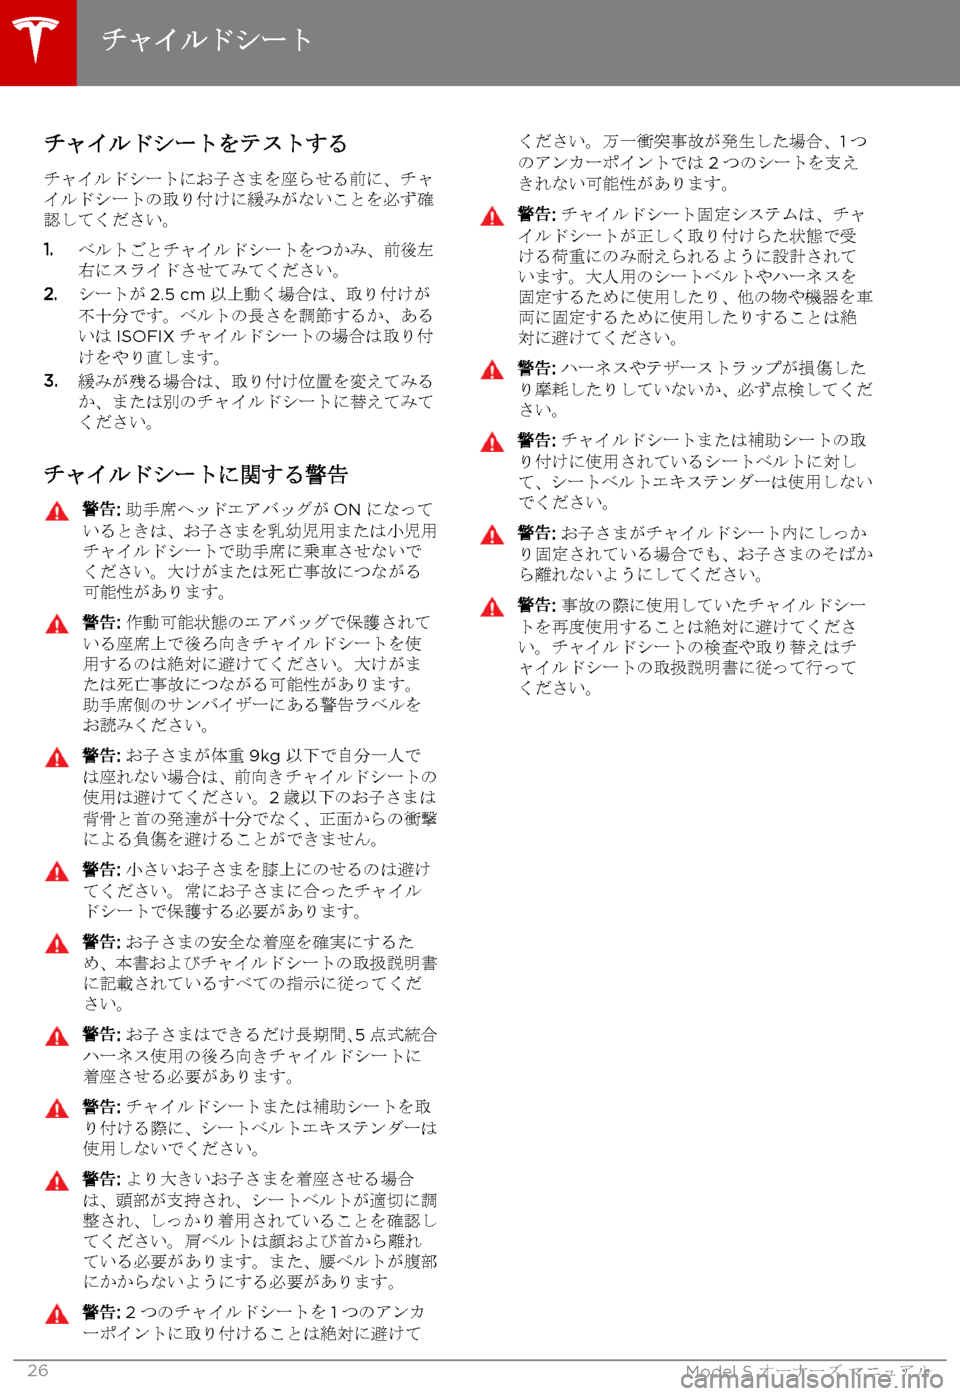 TESLA MODEL S 2015  取扱説明書 (in Japanese)  チャイルドシートをテストする
チャイルドシートにお子さまを座らせる前に、チャイルドシートの取り付けに緩みがないことを必ず確認してくださ�